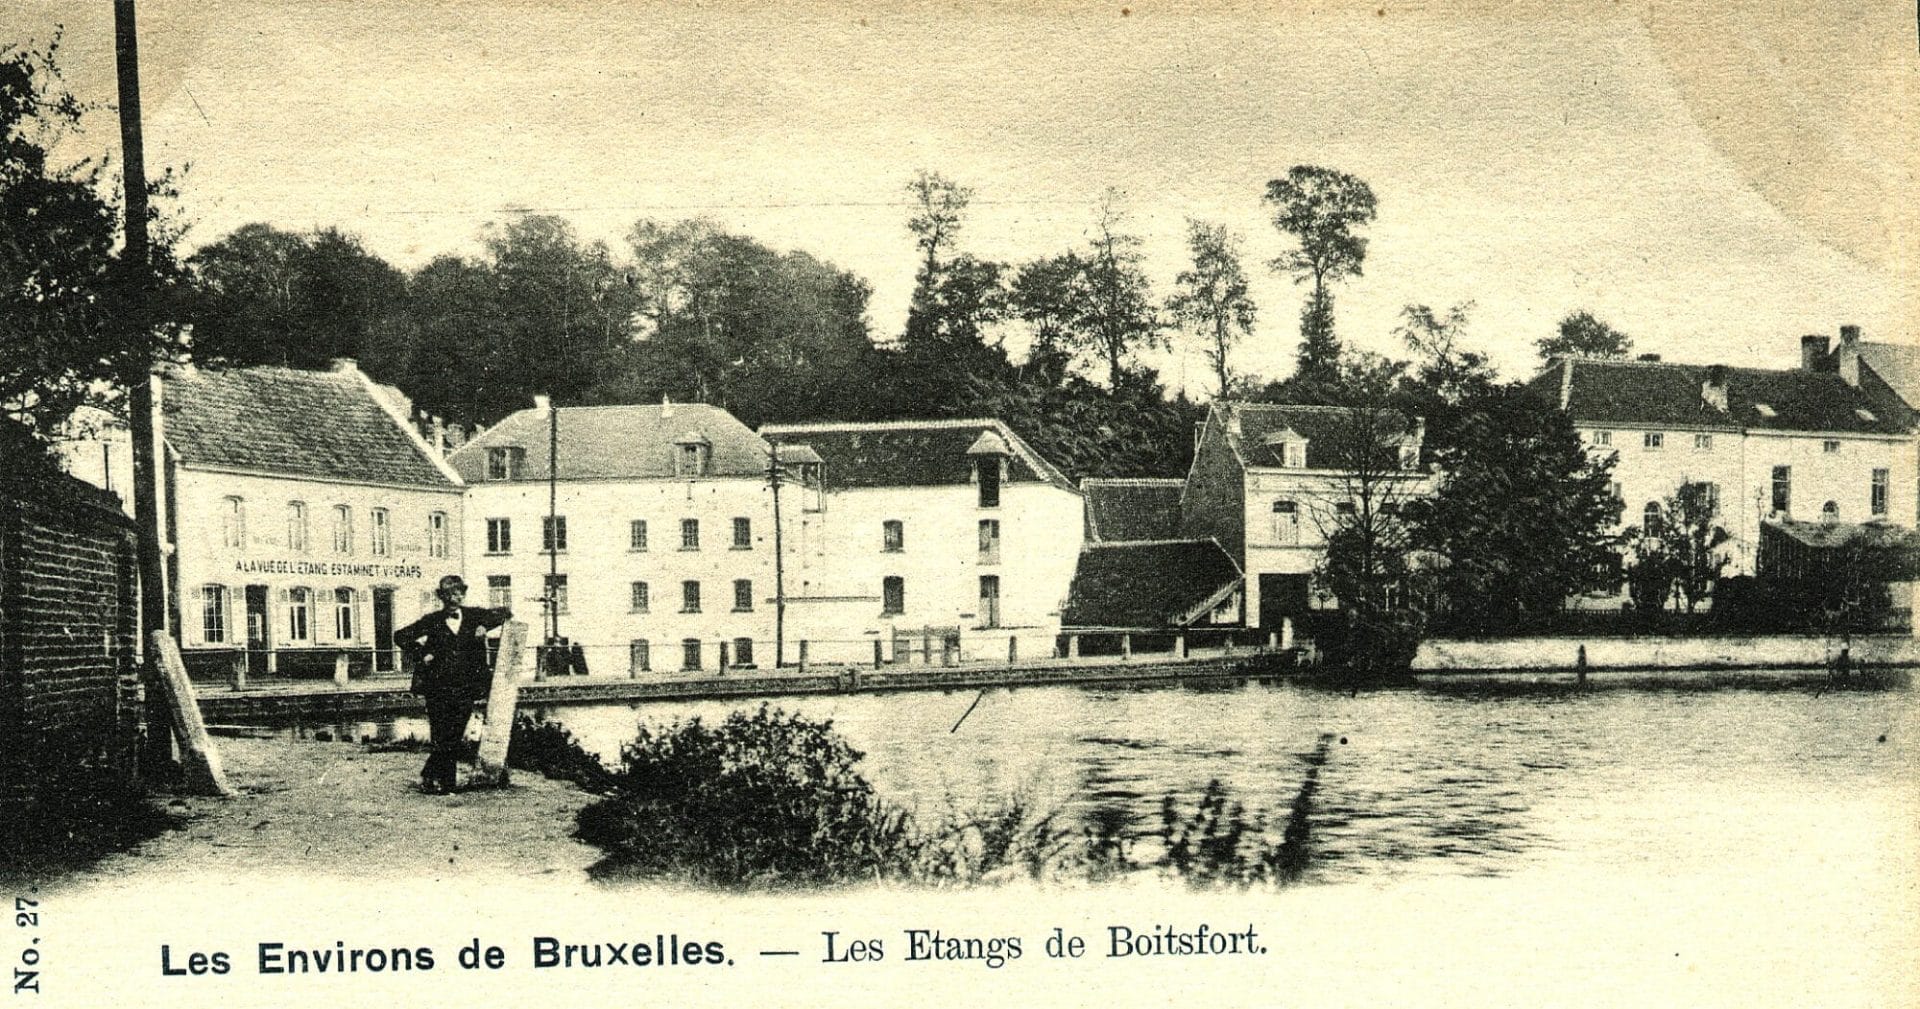 Le moulin de Boitsfort en bordure de l'étang. Carte postale 1900-1905.